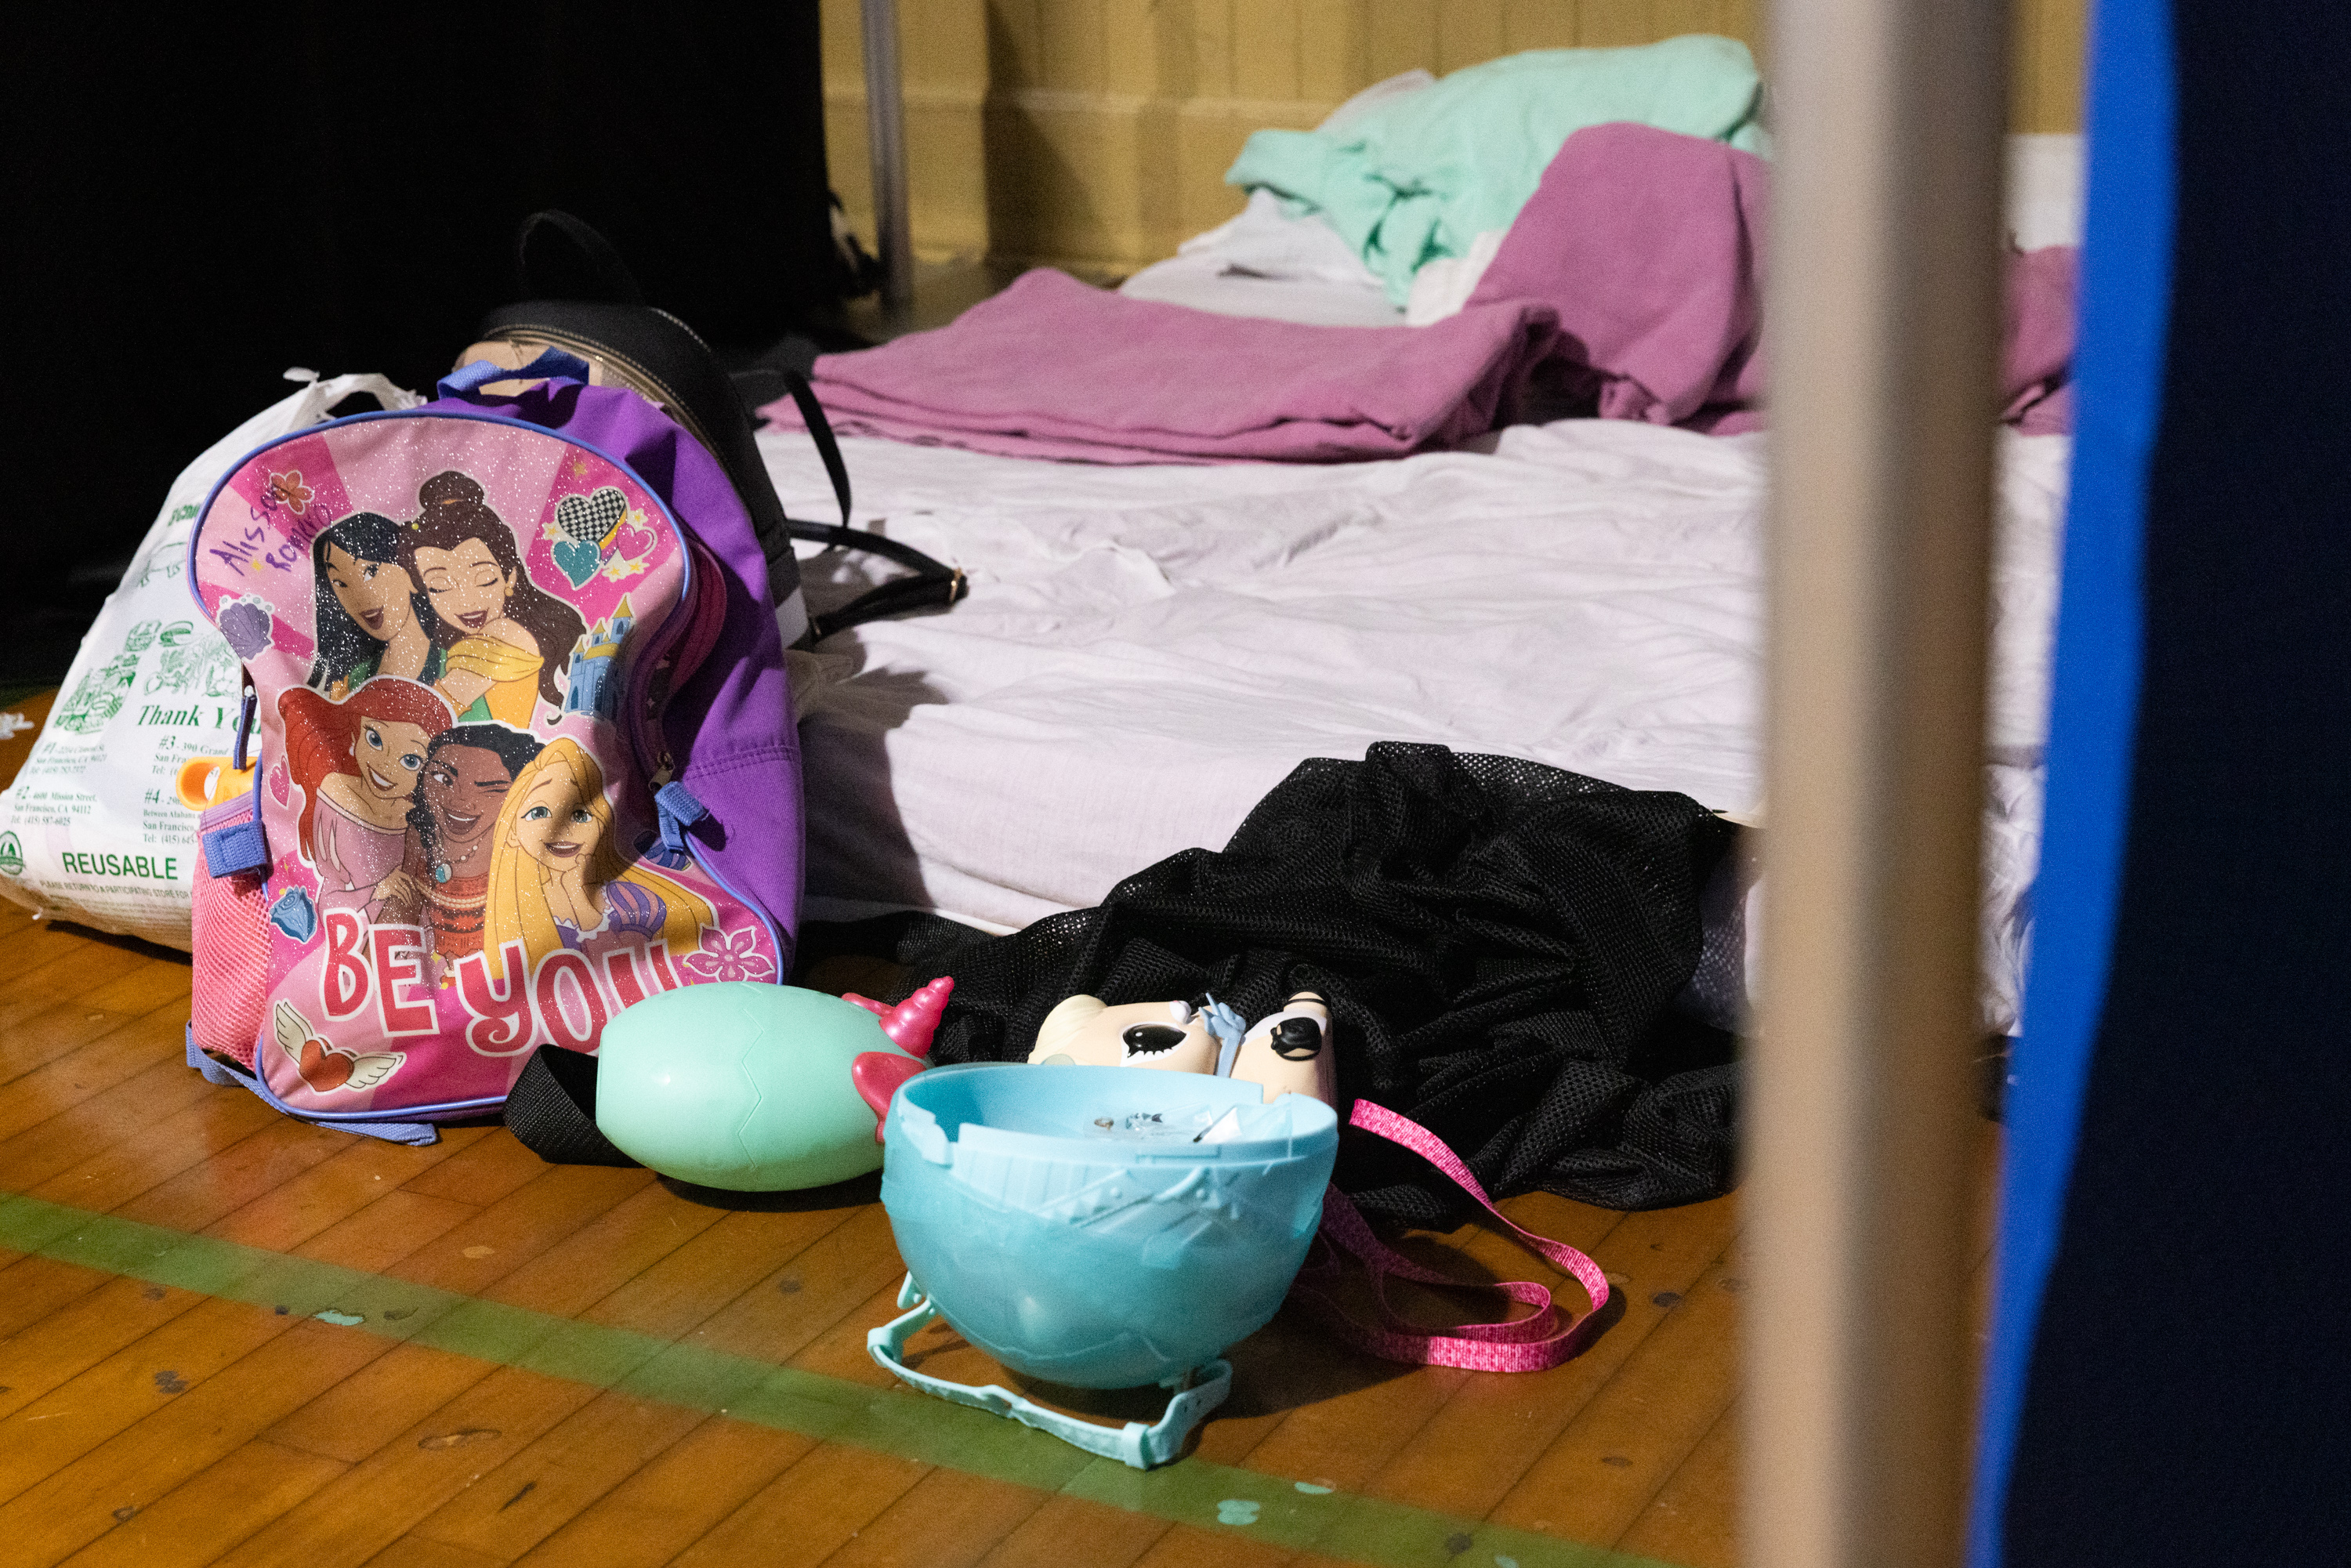 A Disney princess backpack beside a. mattress on a floor.